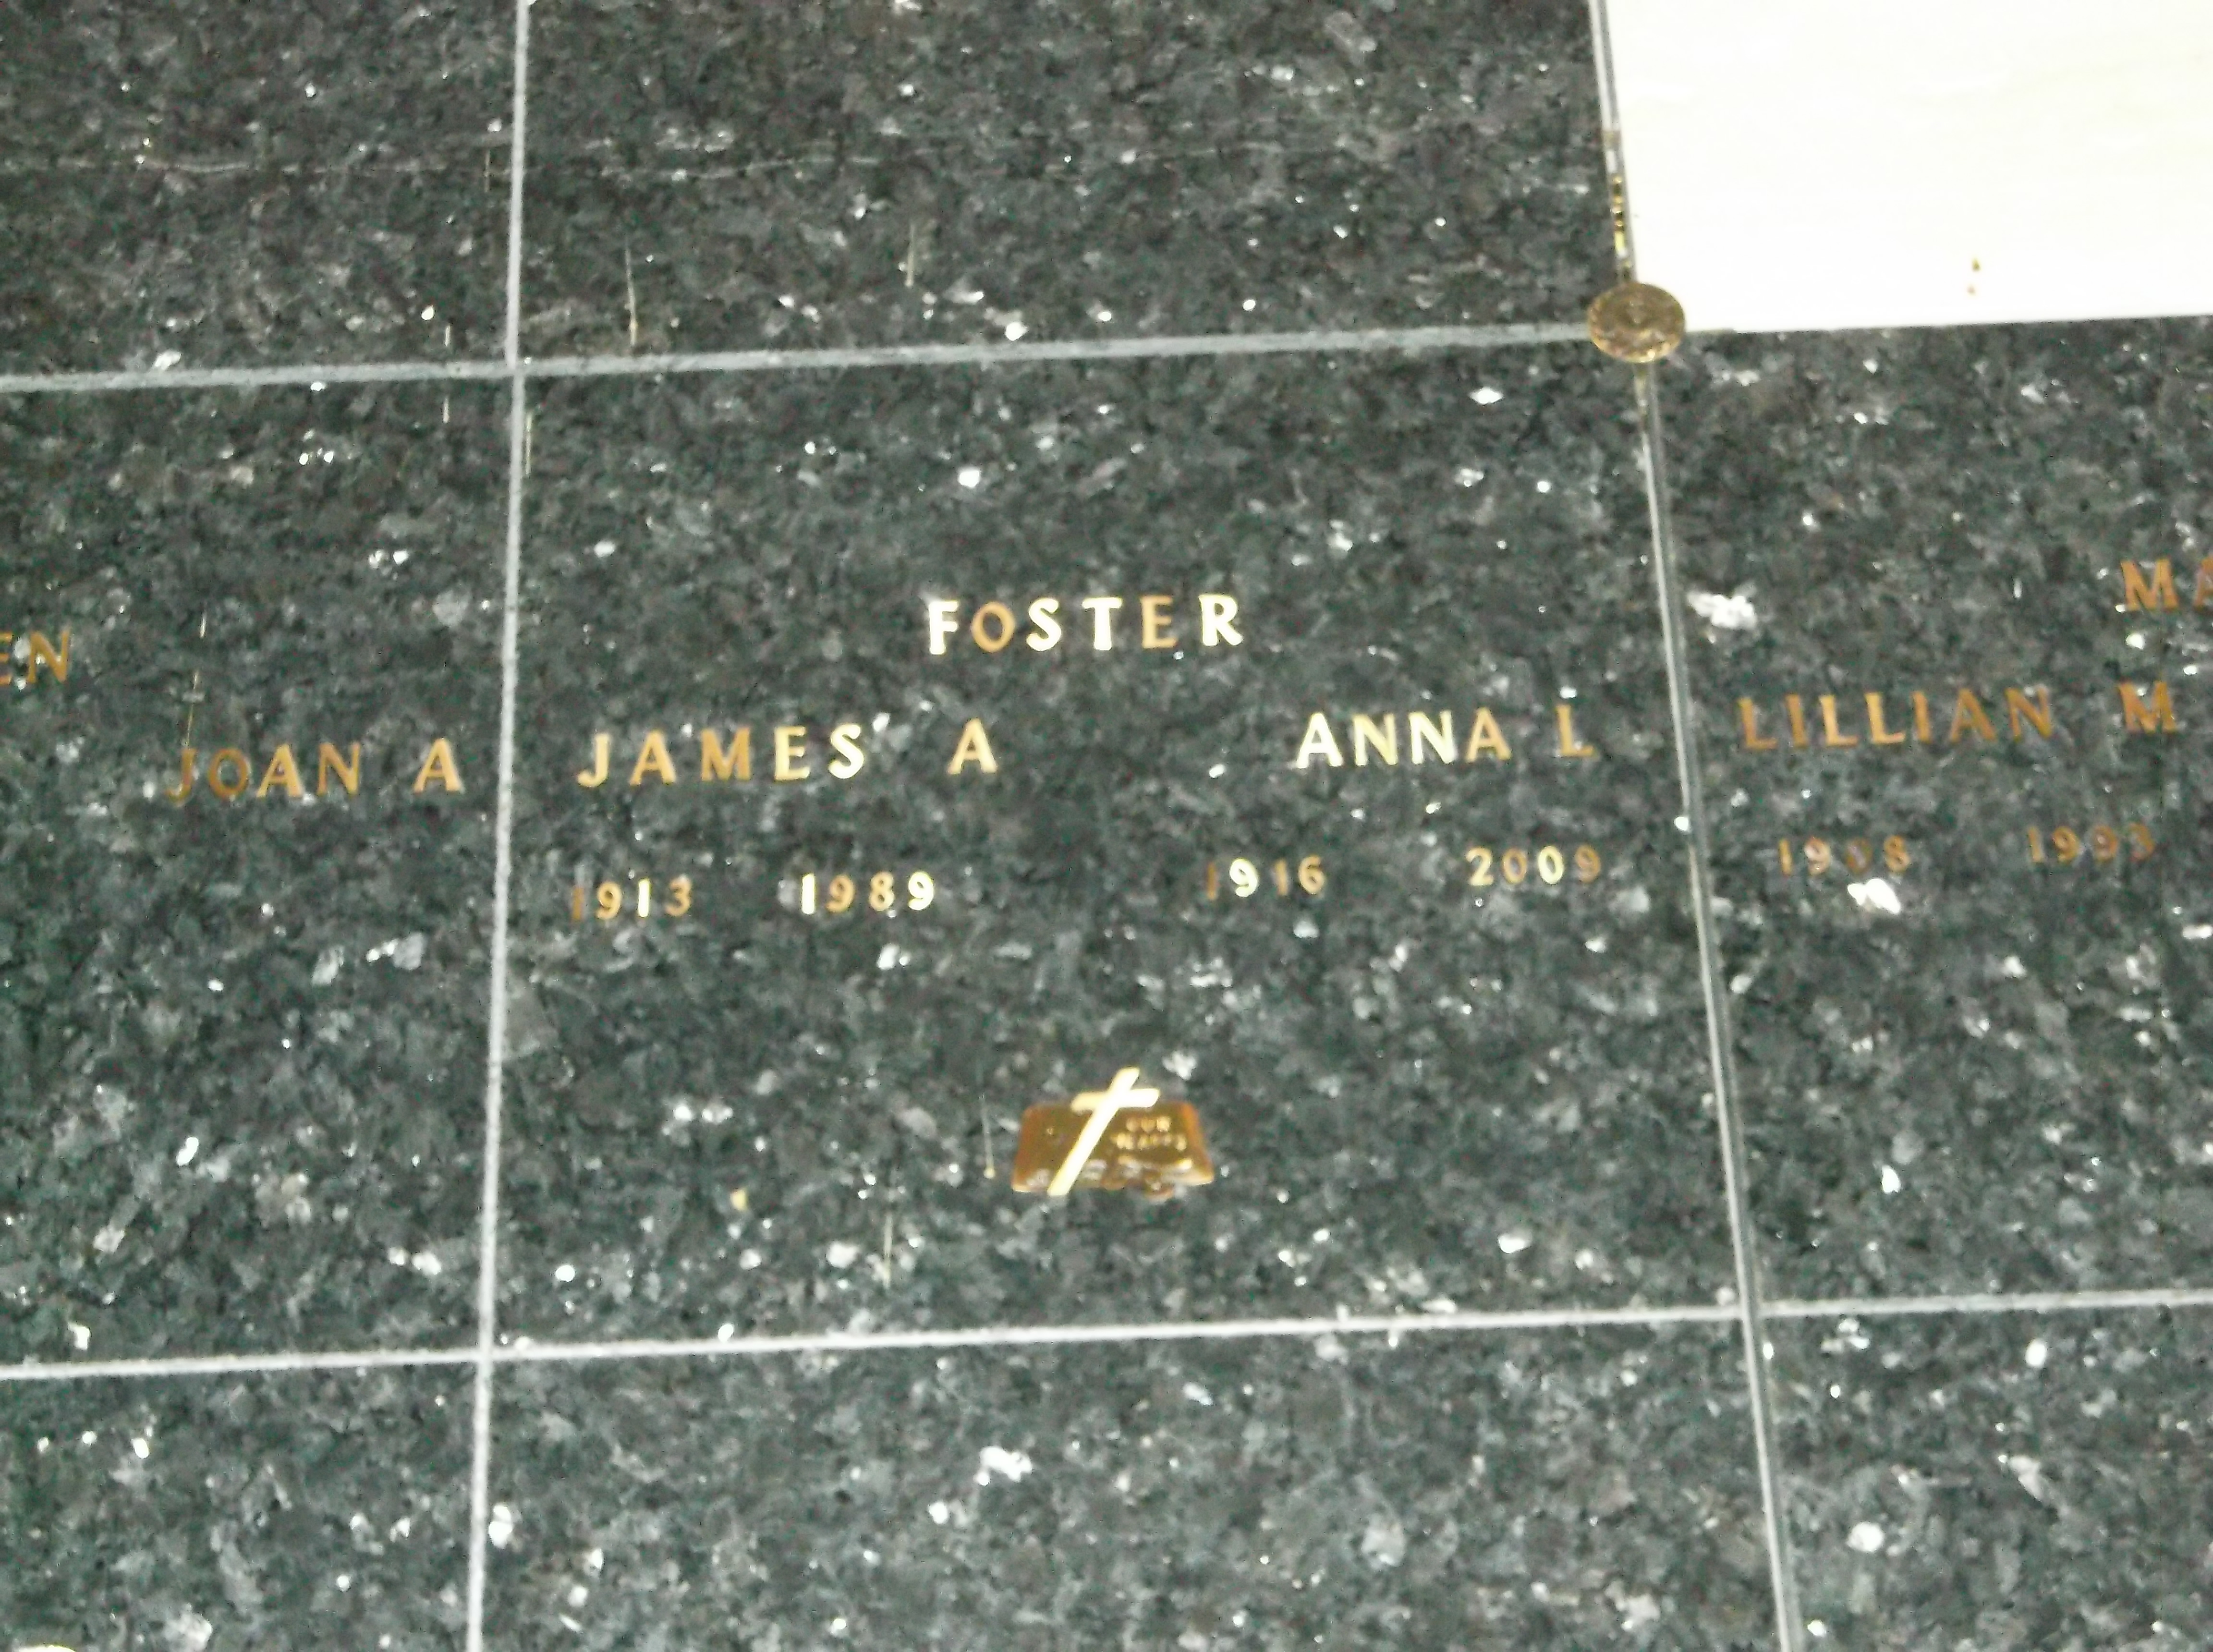 James A Foster